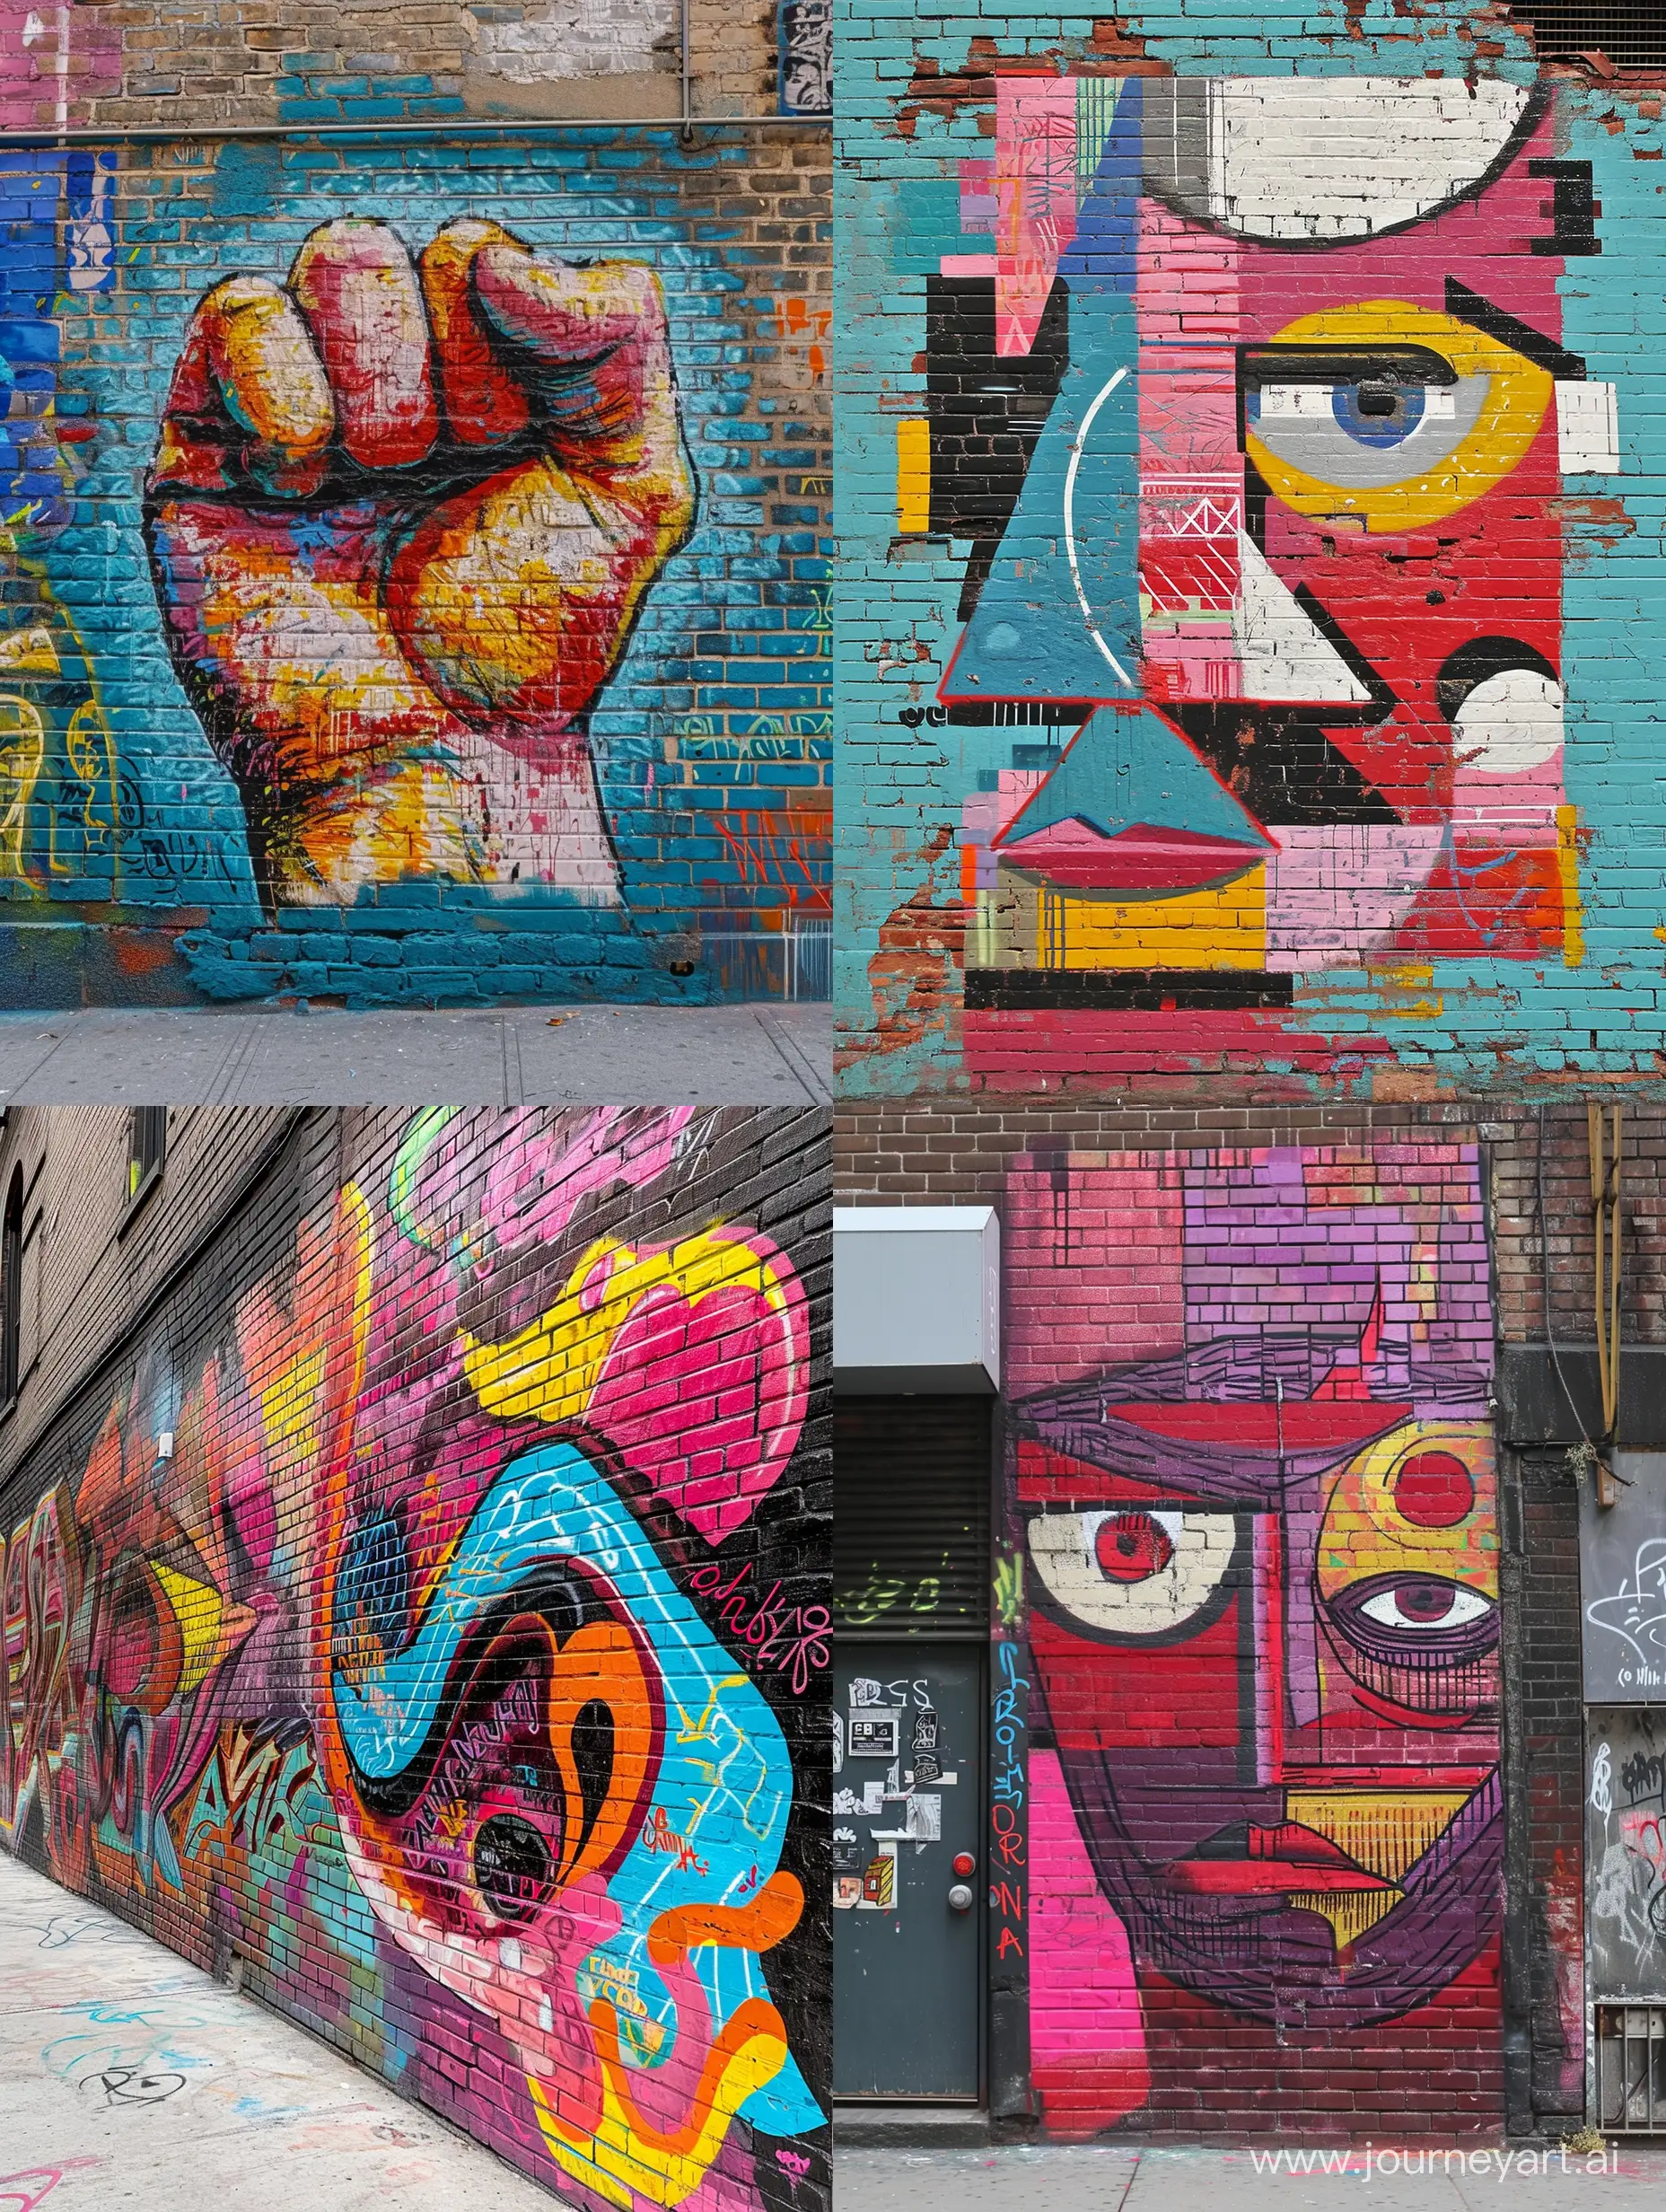 Punky-Style-Graffiti-on-a-New-York-Brick-Wall